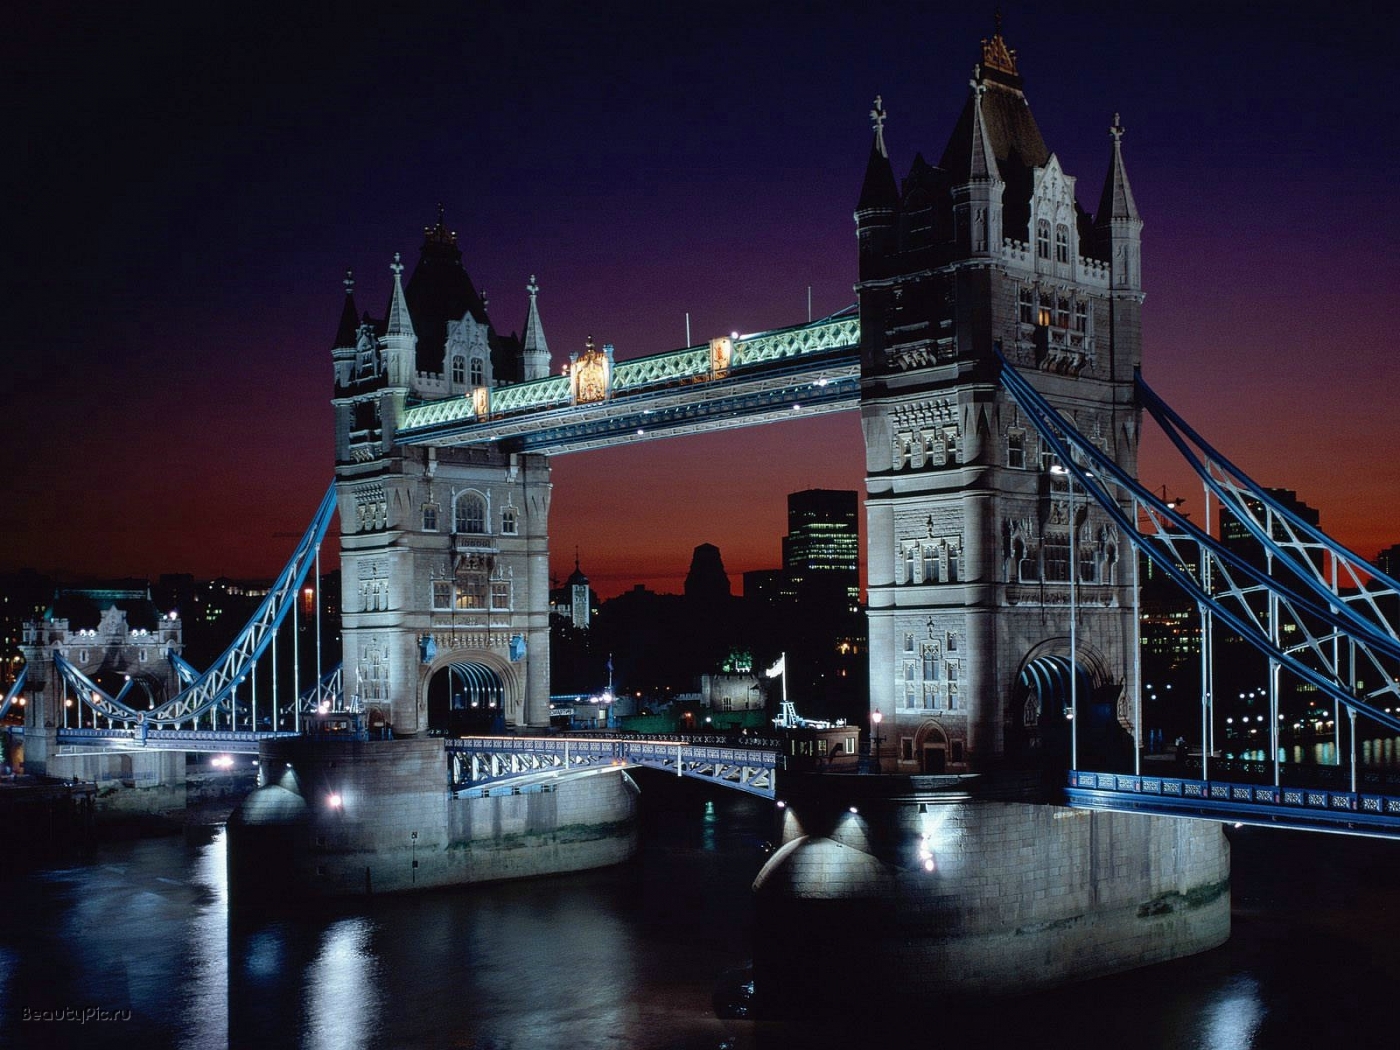 Download background london, landscape, cities, rivers, bridges, night, architecture